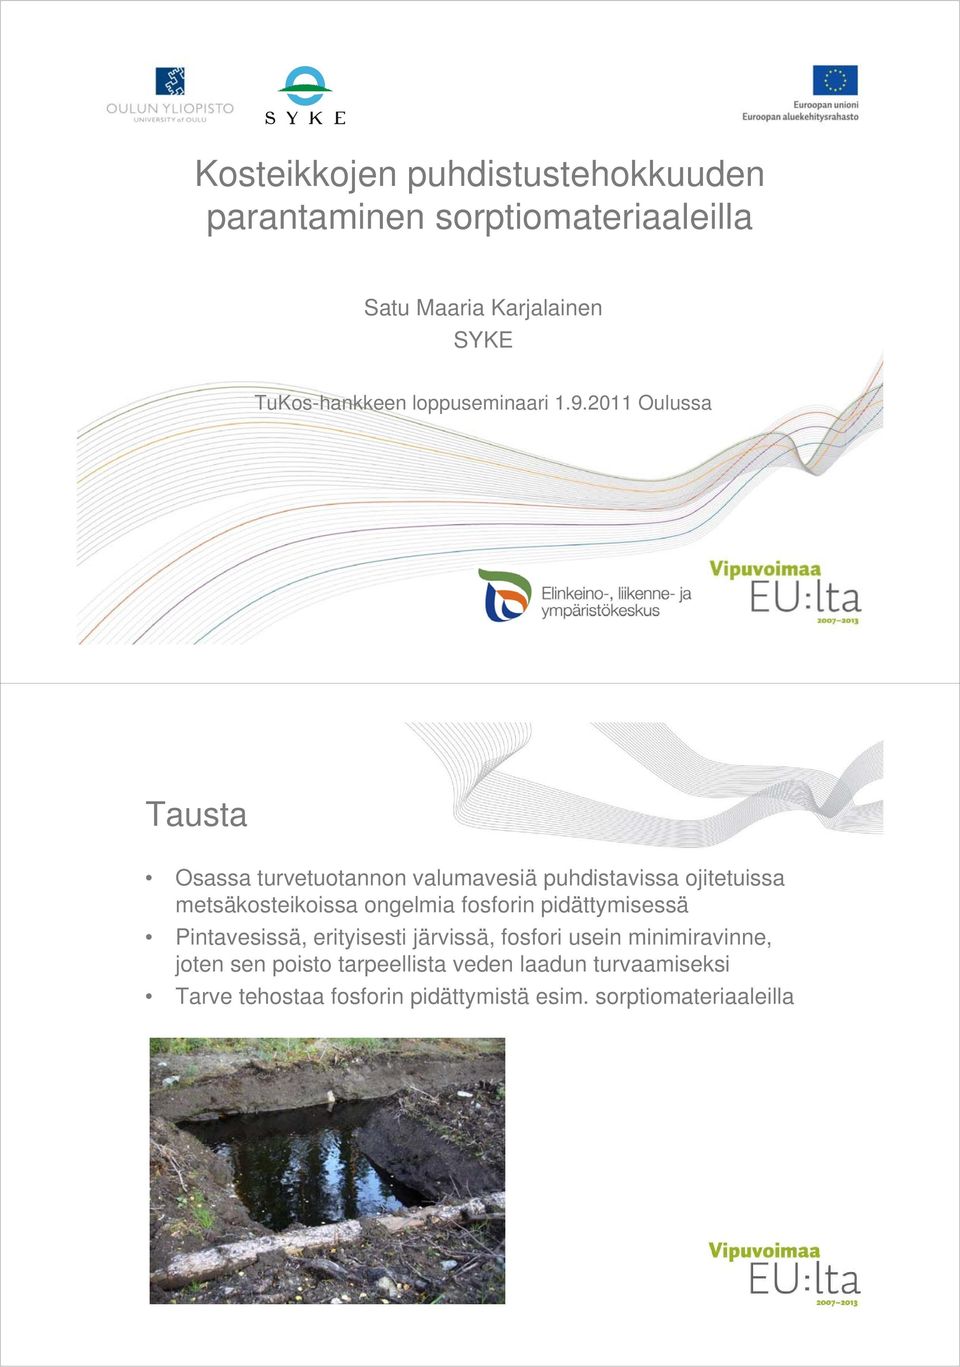 2011 Oulussa Tausta Osassa turvetuotannon t t valumavesiä puhdistavissa i ojitetuissa t i metsäkosteikoissa